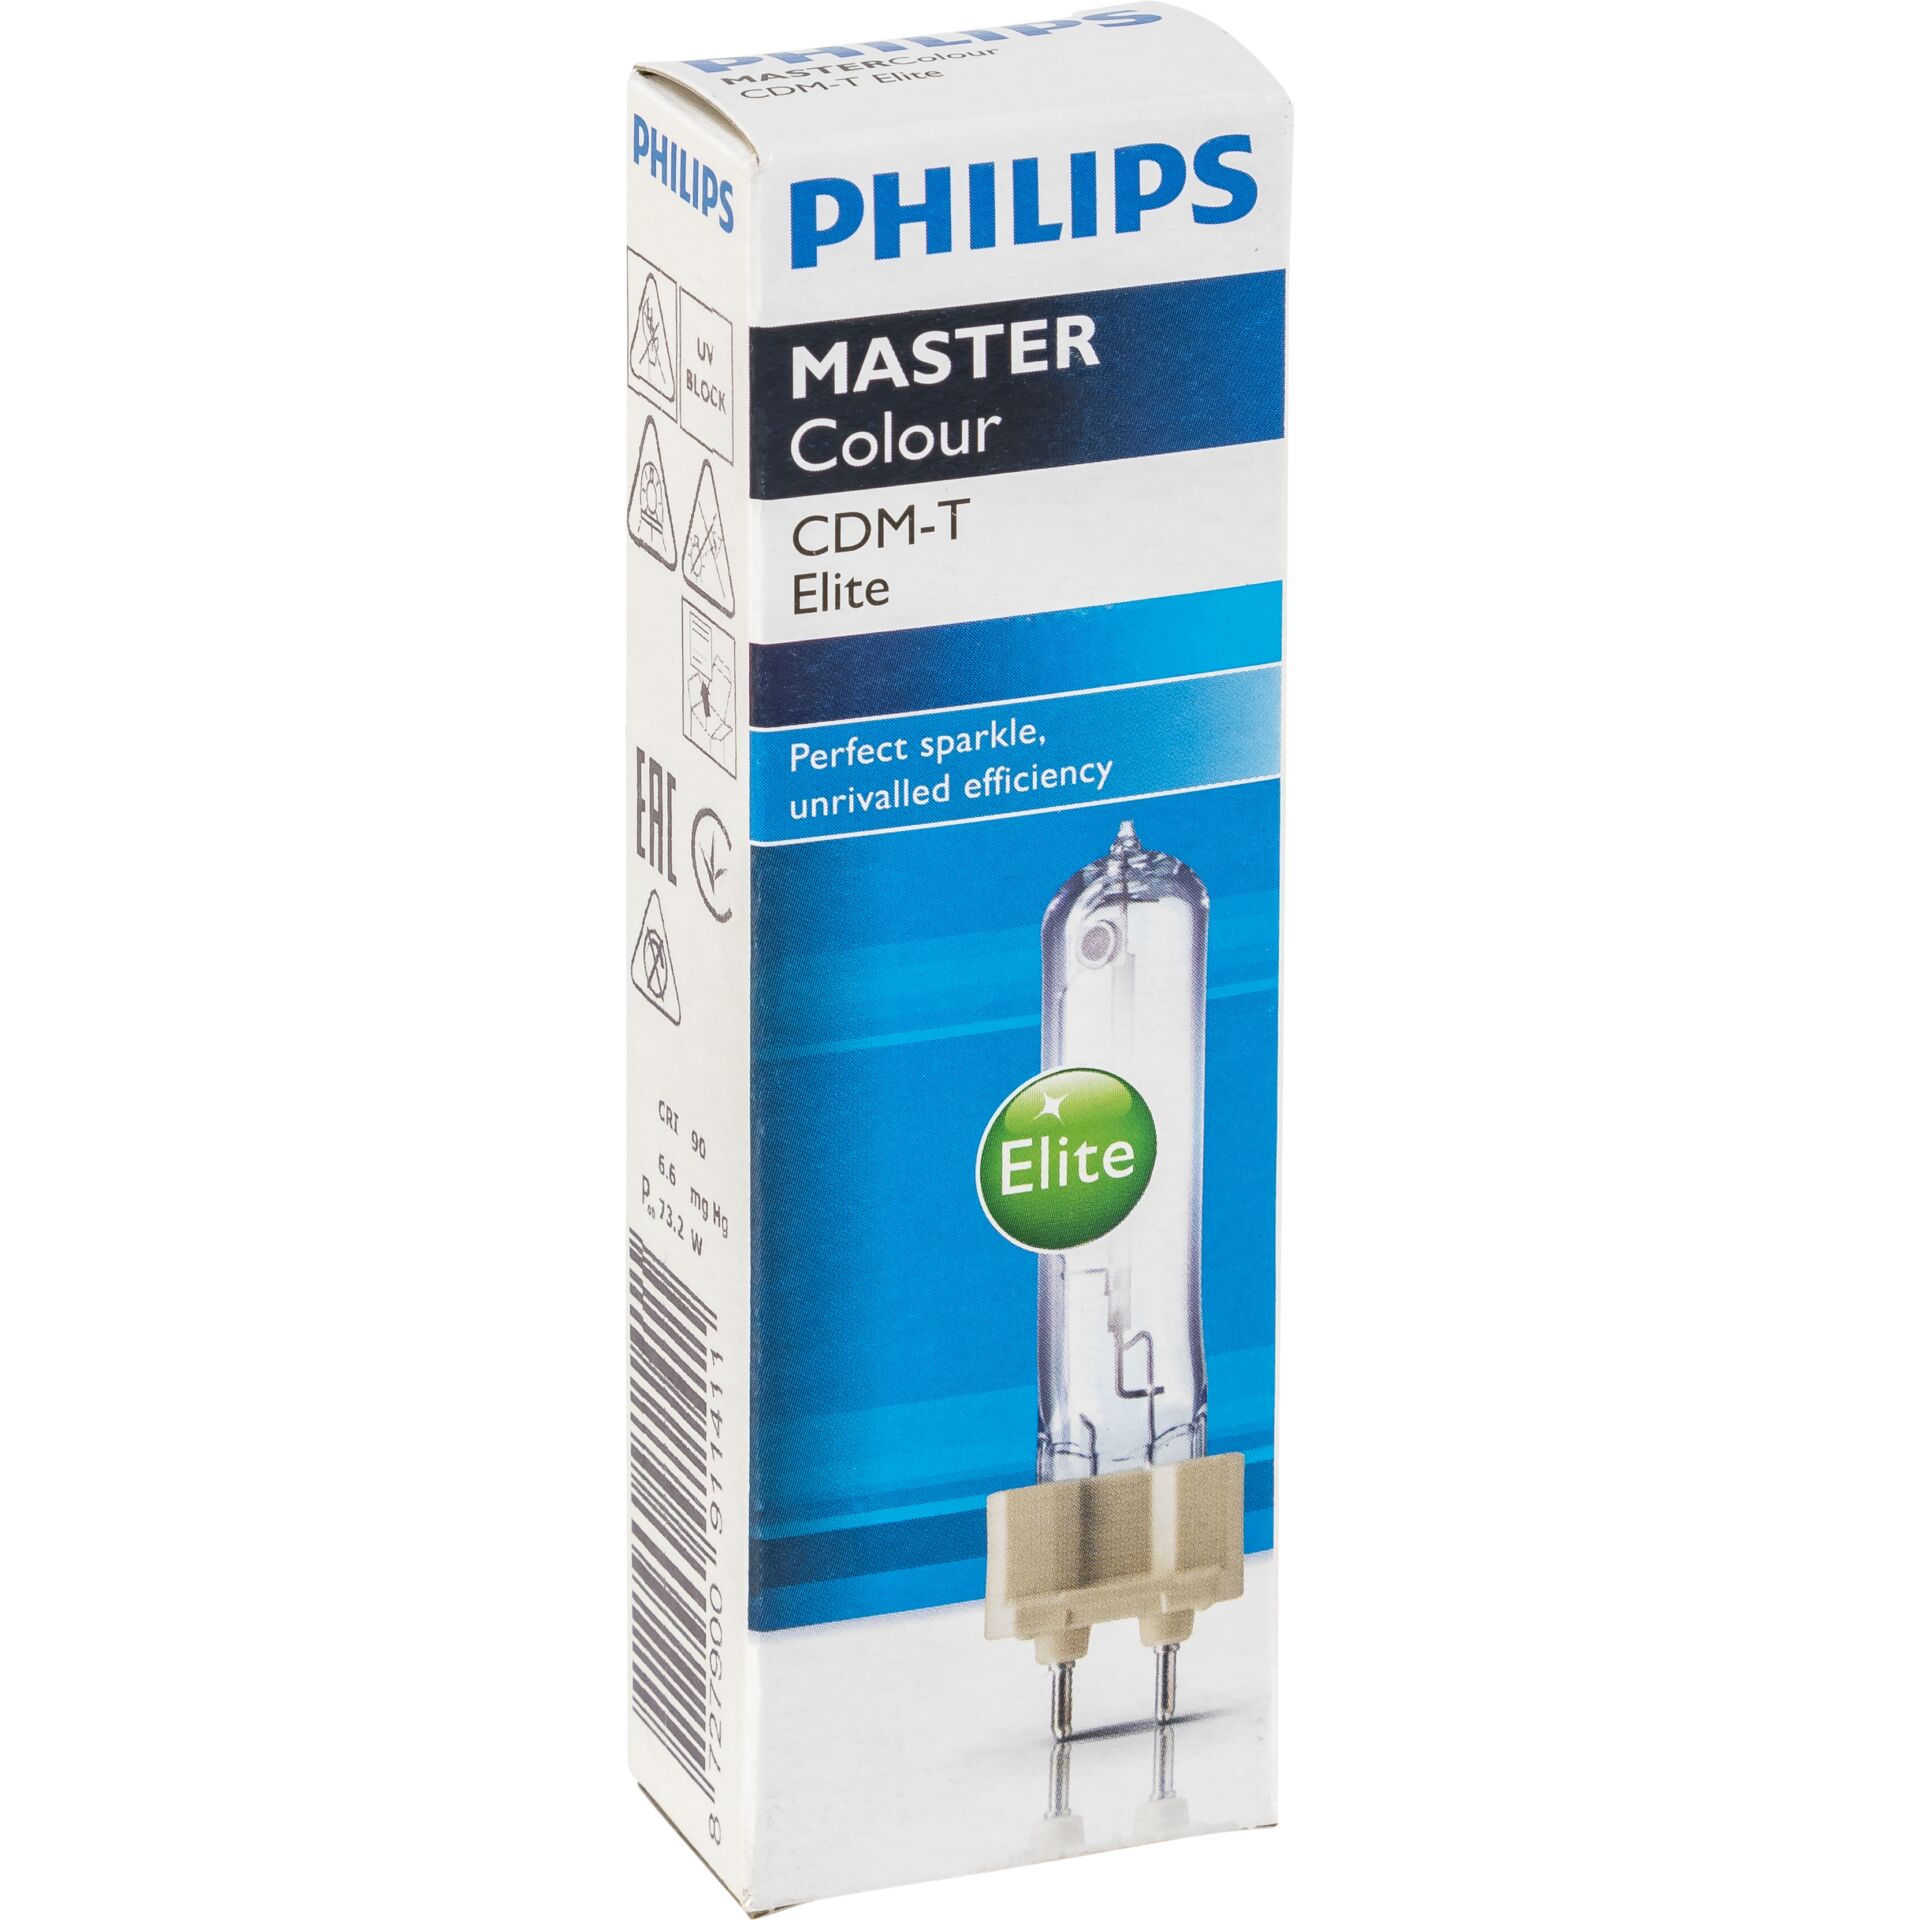 Philips MASTERColour CDM-T Elite 70W/930 G12